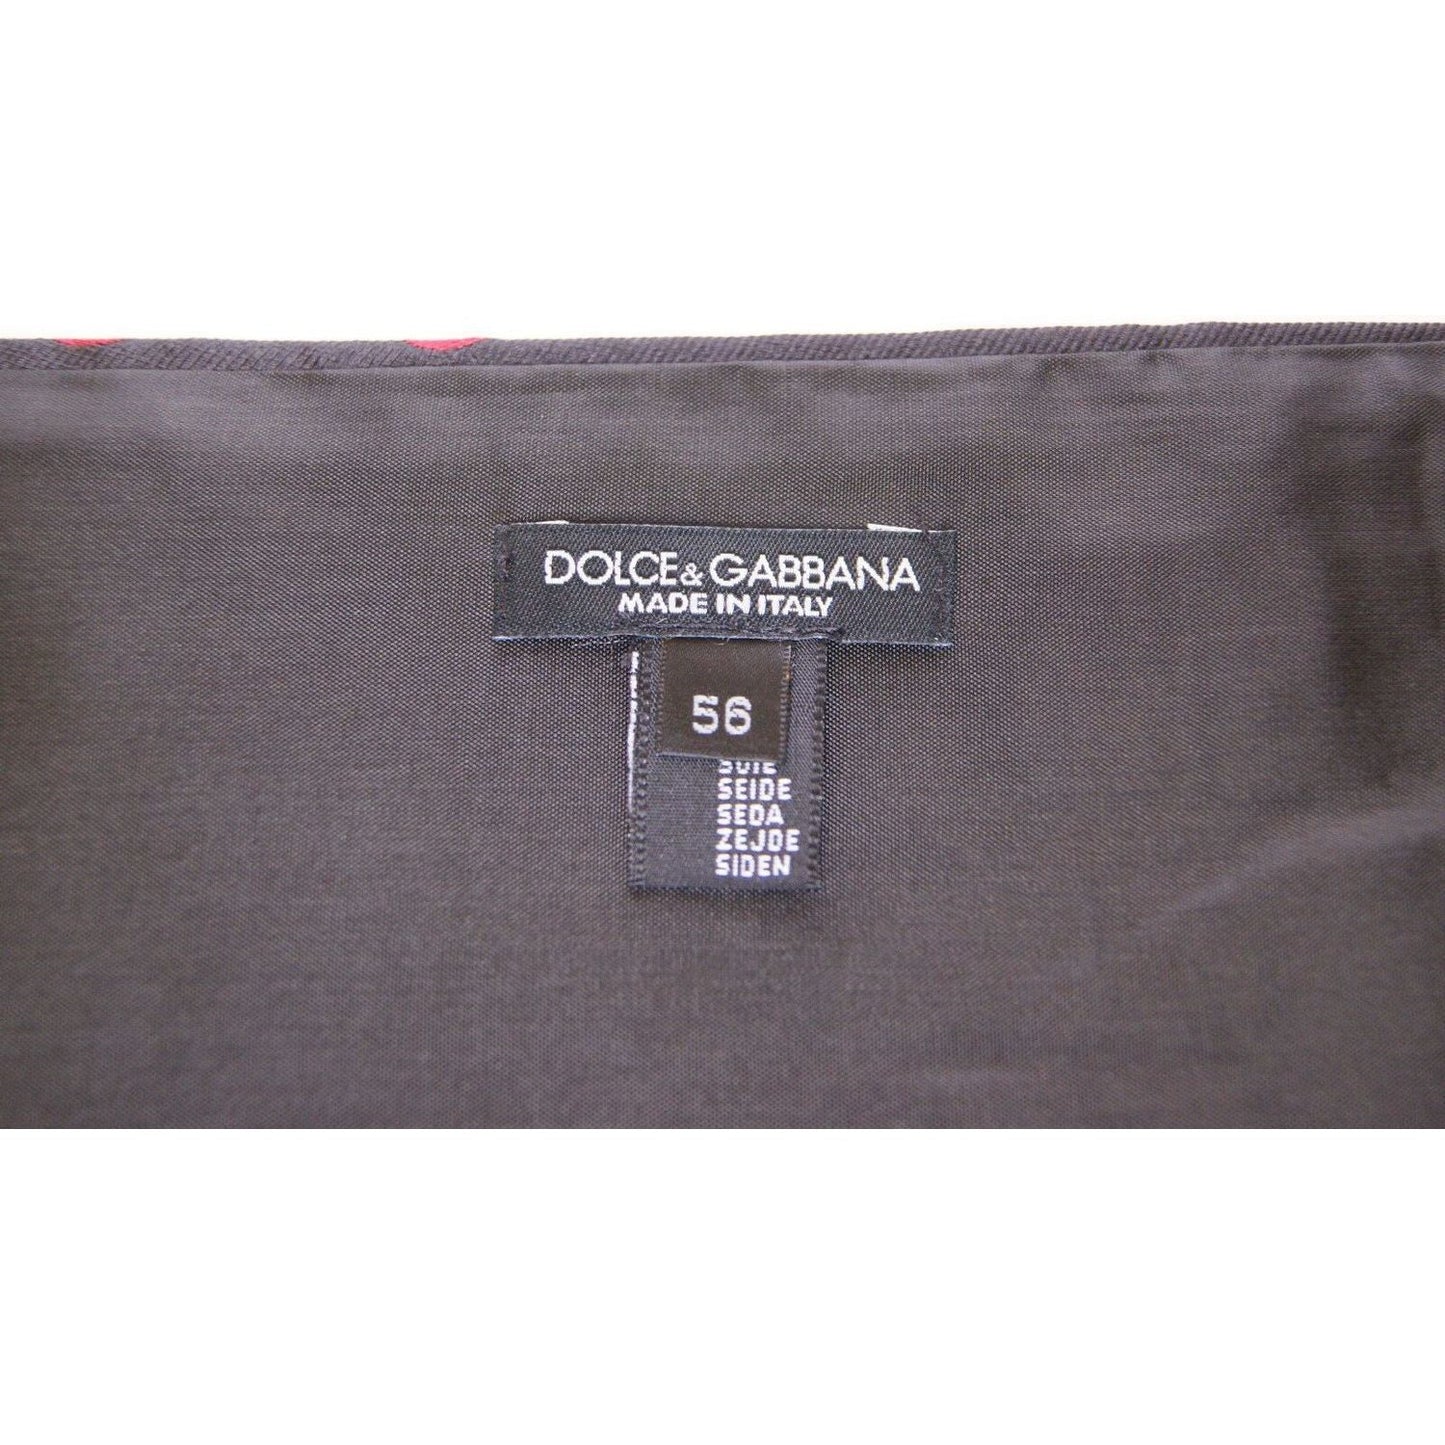 Dolce & Gabbana Exquisite Black Silk Cummerbund with Red Polka Dots black-waist-smoking-tuxedo-cummerbund-belt-1